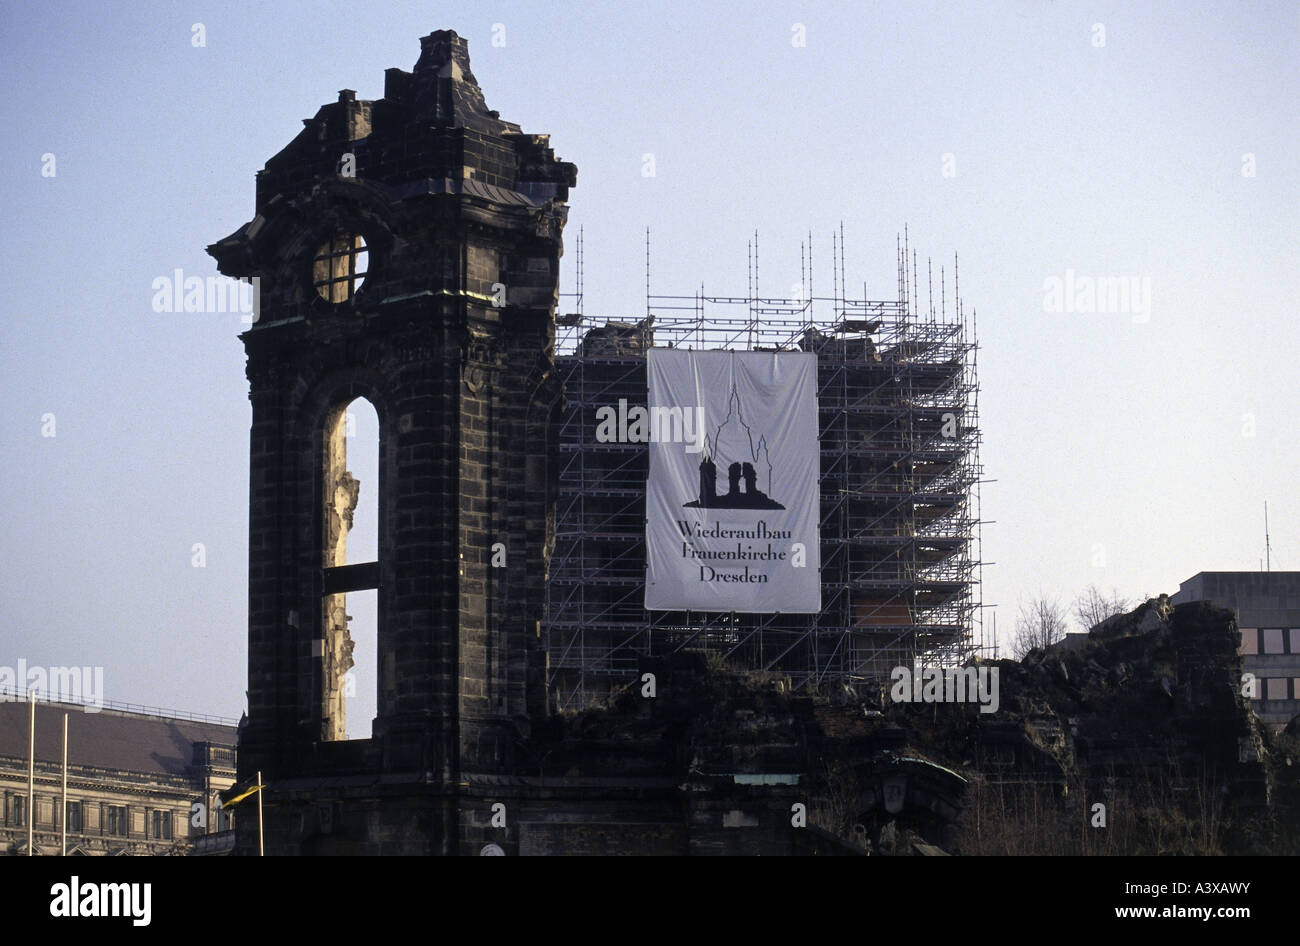 Geografía / viajes, Alemania, Dresde, Frauenkirche, construido 1726 - 1743, reconstrucción, 1994 - 2005, permanecer de ladrillo, a principios de los años 90, Foto de stock